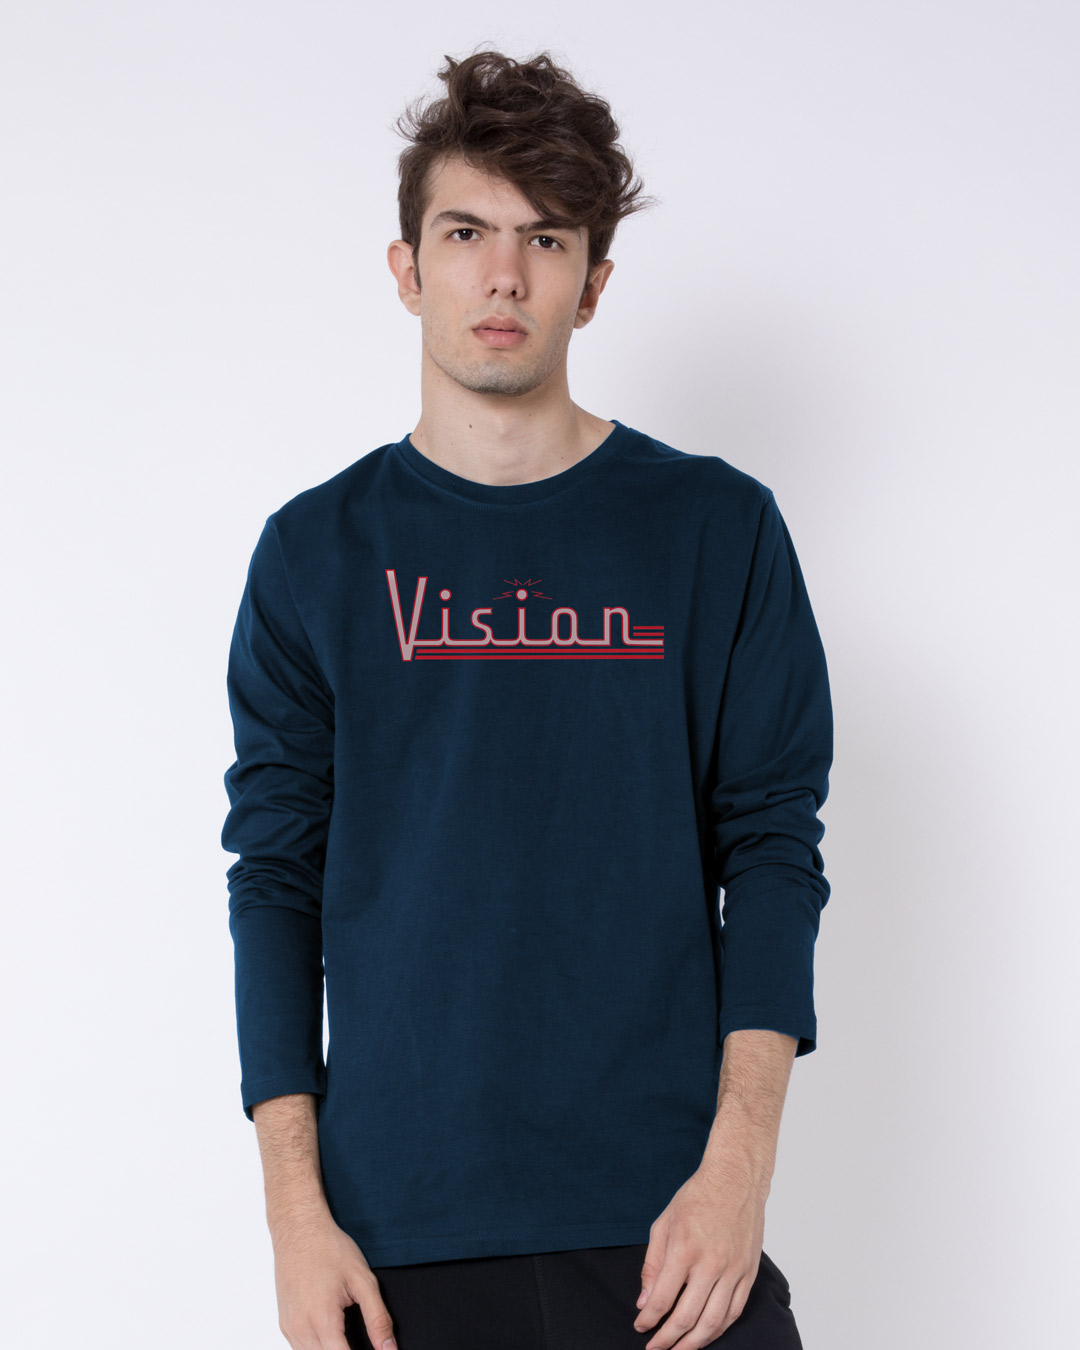 Buy Vision Printed Full Sleeve T-Shirt for Men Online at Bewakoof